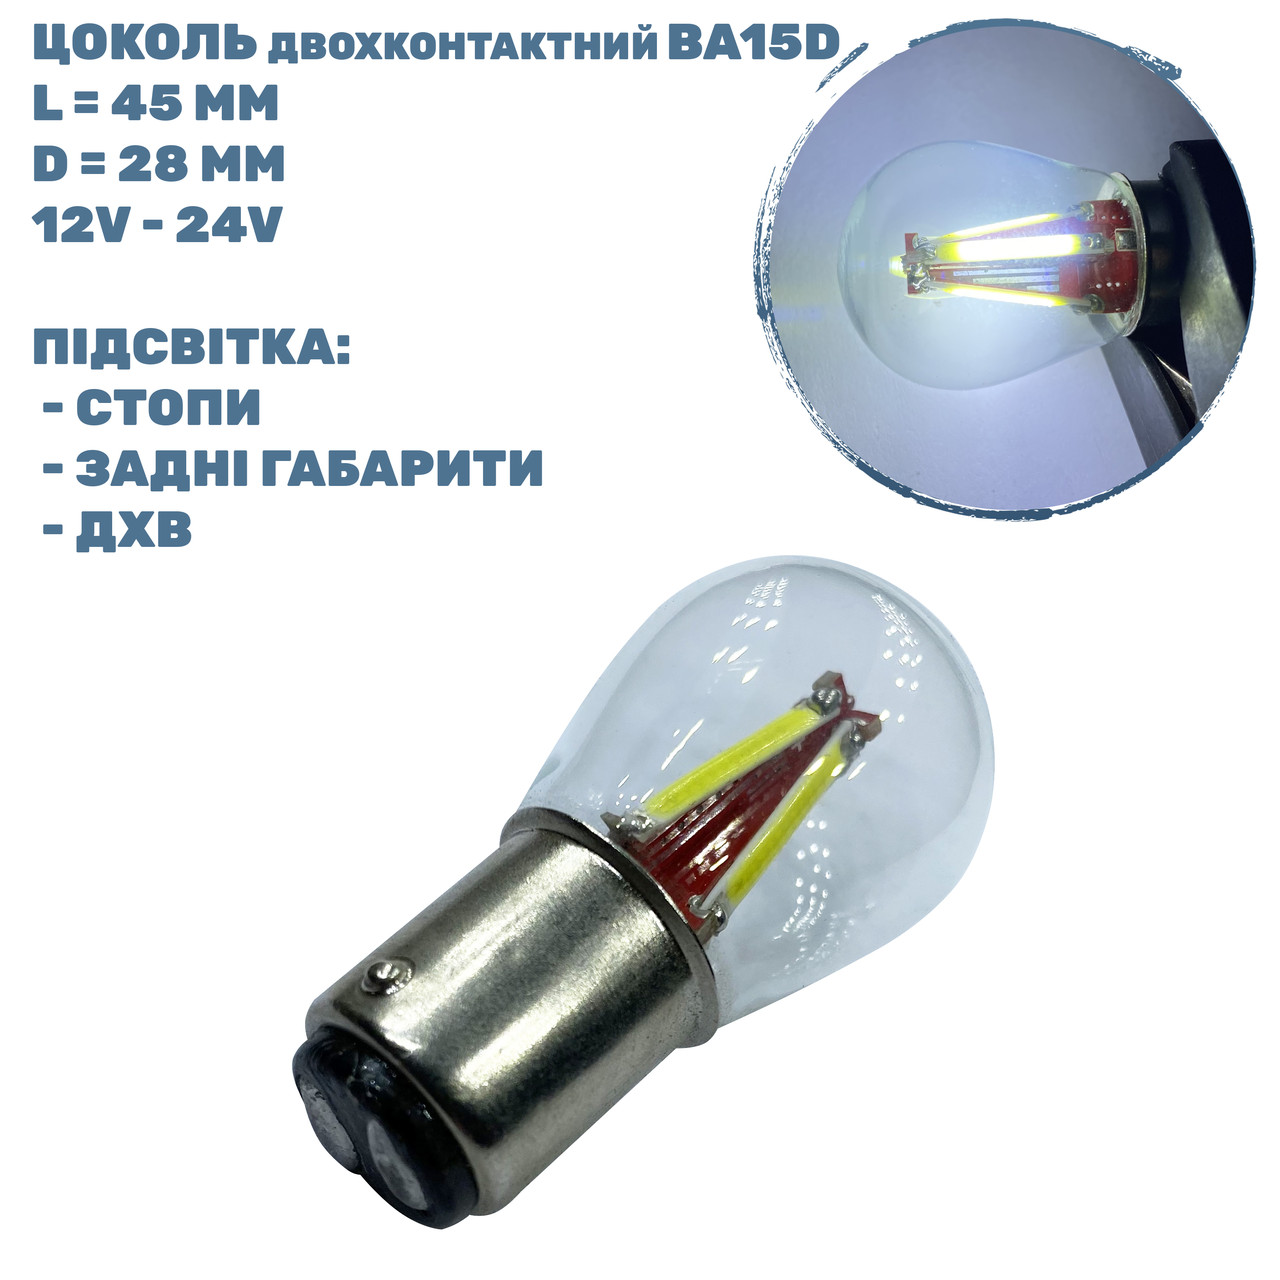 Лампа LED цоколь двохконтактний BA15D; 2.2W; 12-24V; 3 діода;D-28 mm; L-45 mm (T25-B15D-003WCOB BA15D)